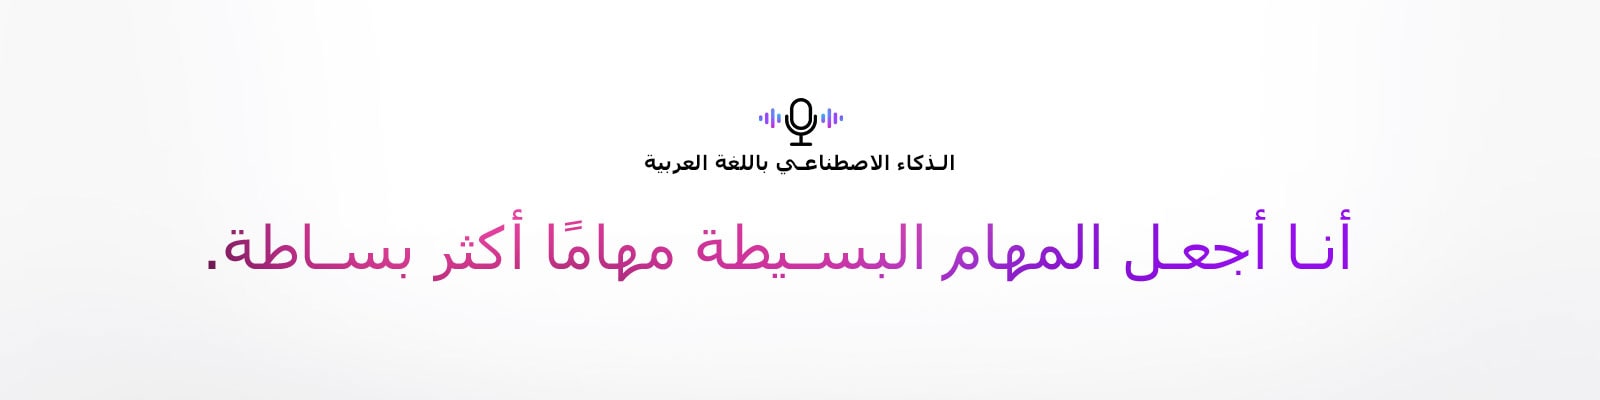 رمز الأمر الصوتي وجملة تقول "الذكاء الاصطناعي باللغة العربية". هناك جملة تقول "أنا أجعل المهام البسيطة مهامًا أكثر بساطة".